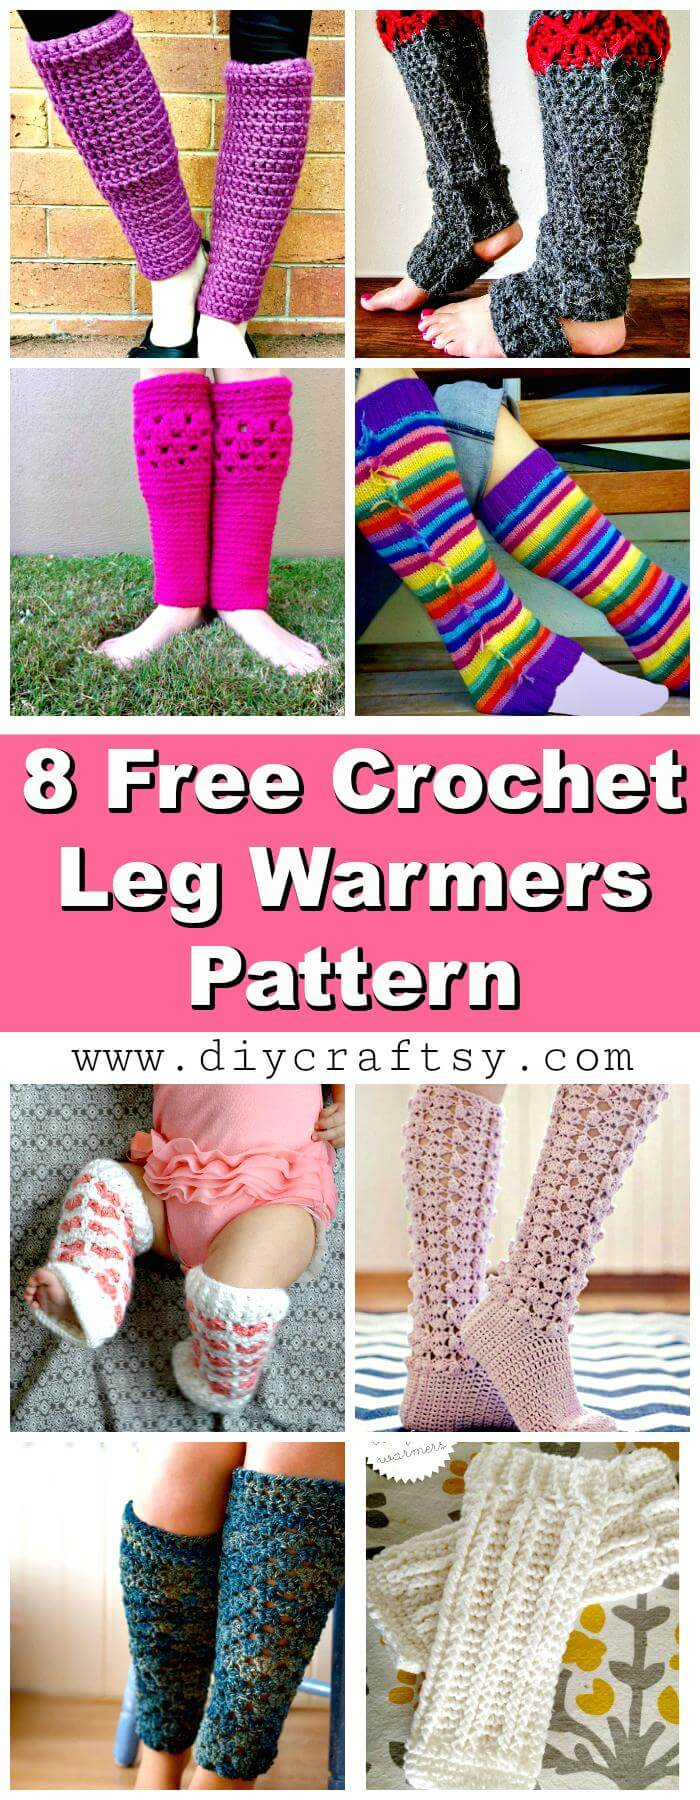 Leg Warmer Crochet Pattern Free Crochet Leg Warmers 8 Free Crochet Leg Warmer Patterns Diy Crafts